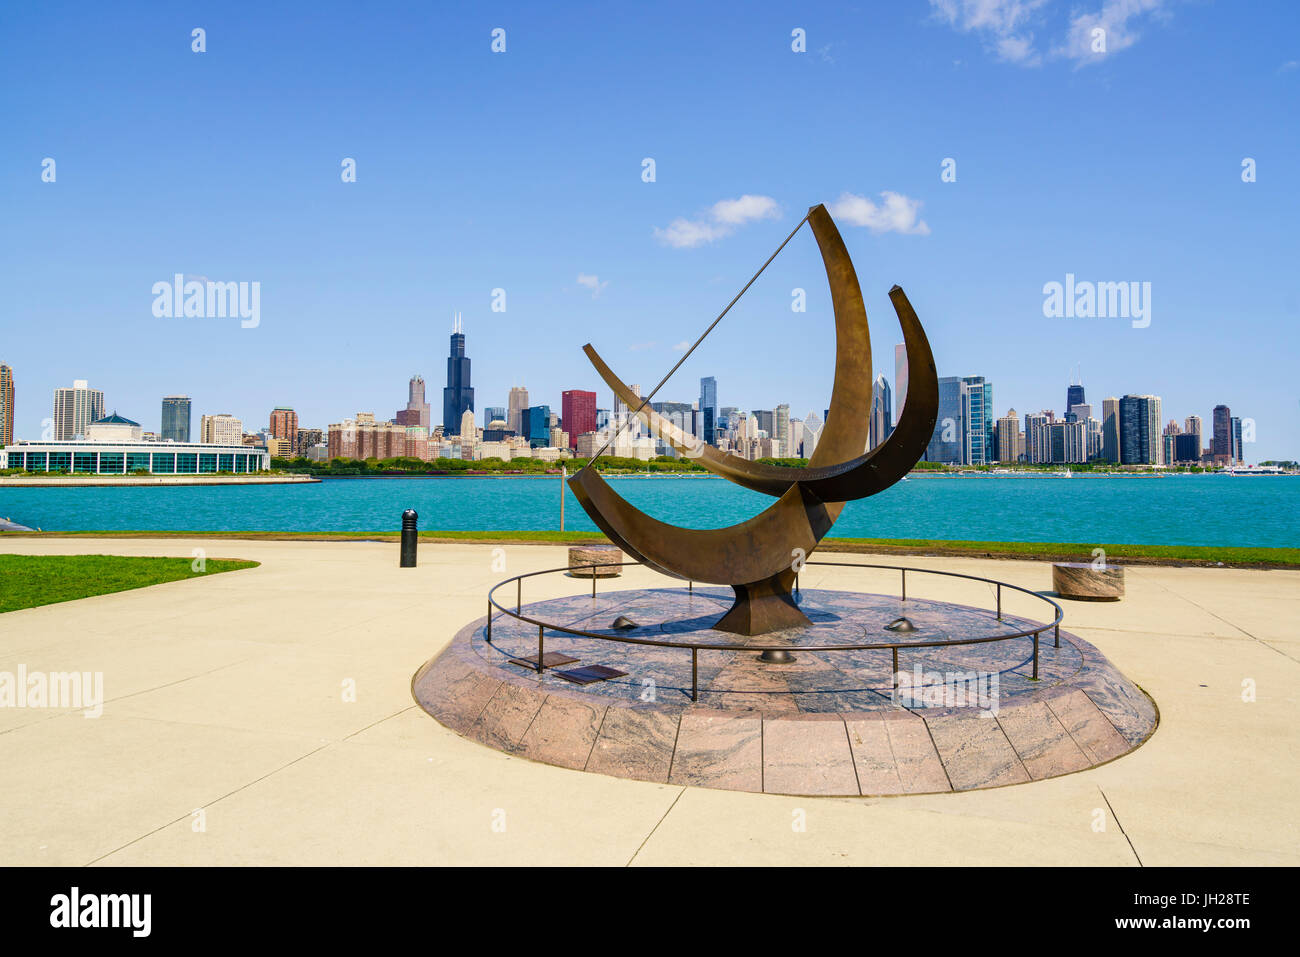 Il Planetarium Adler meridiana con il lago Michigan e dello skyline della città al di là, Chicago, Illinois, Stati Uniti d'America Foto Stock